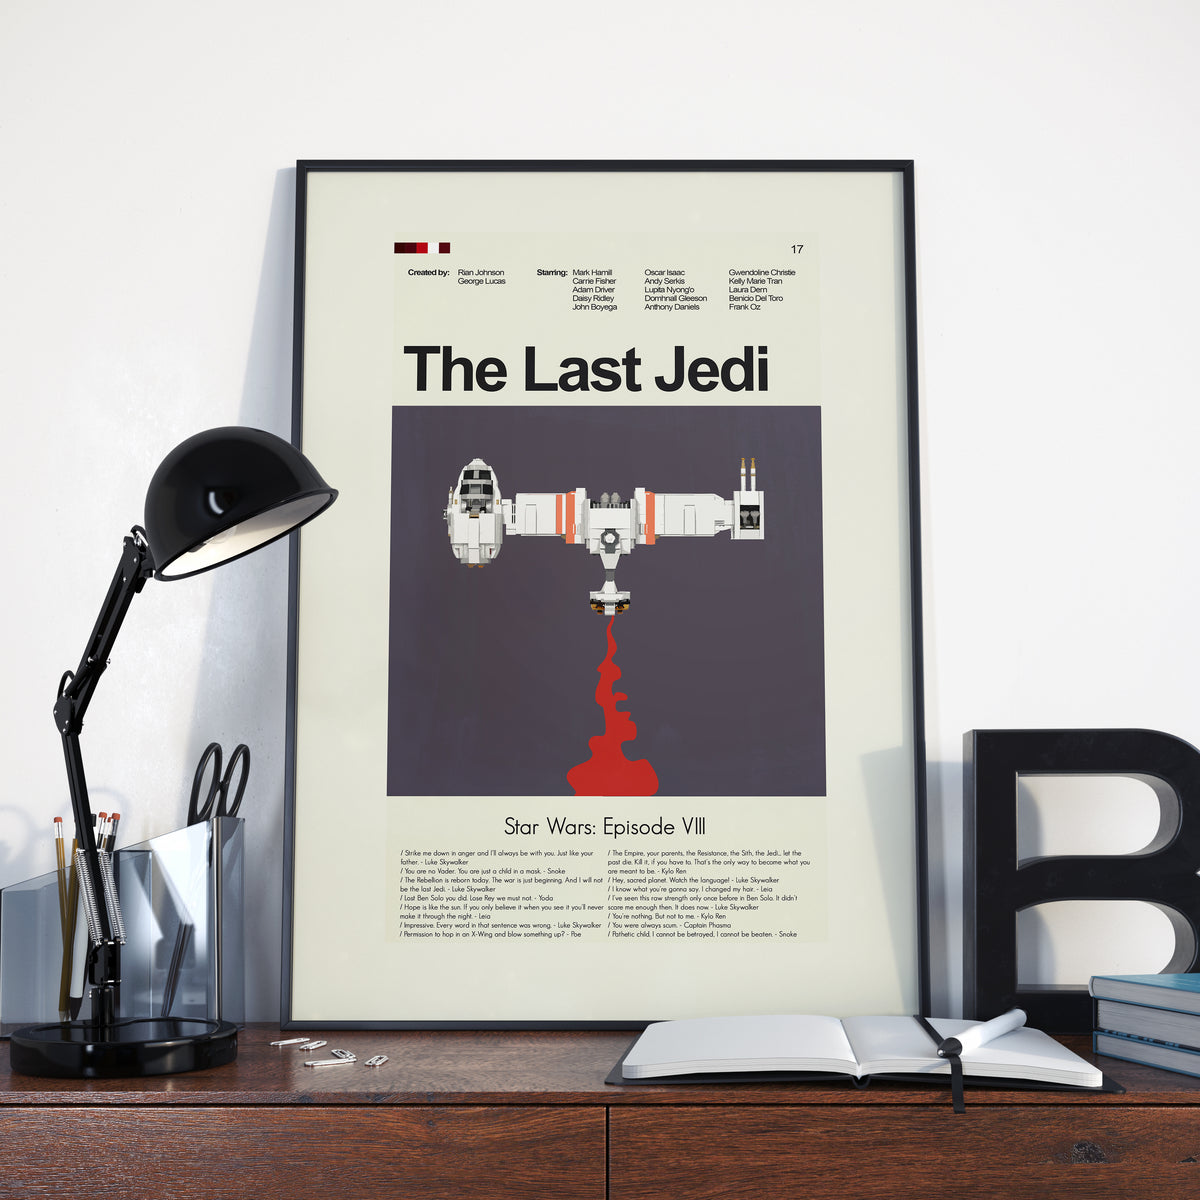 The Last Jedi: Star Wars Episode VIII - Ski Speeder | 12"x18" or 18"x24" Print only